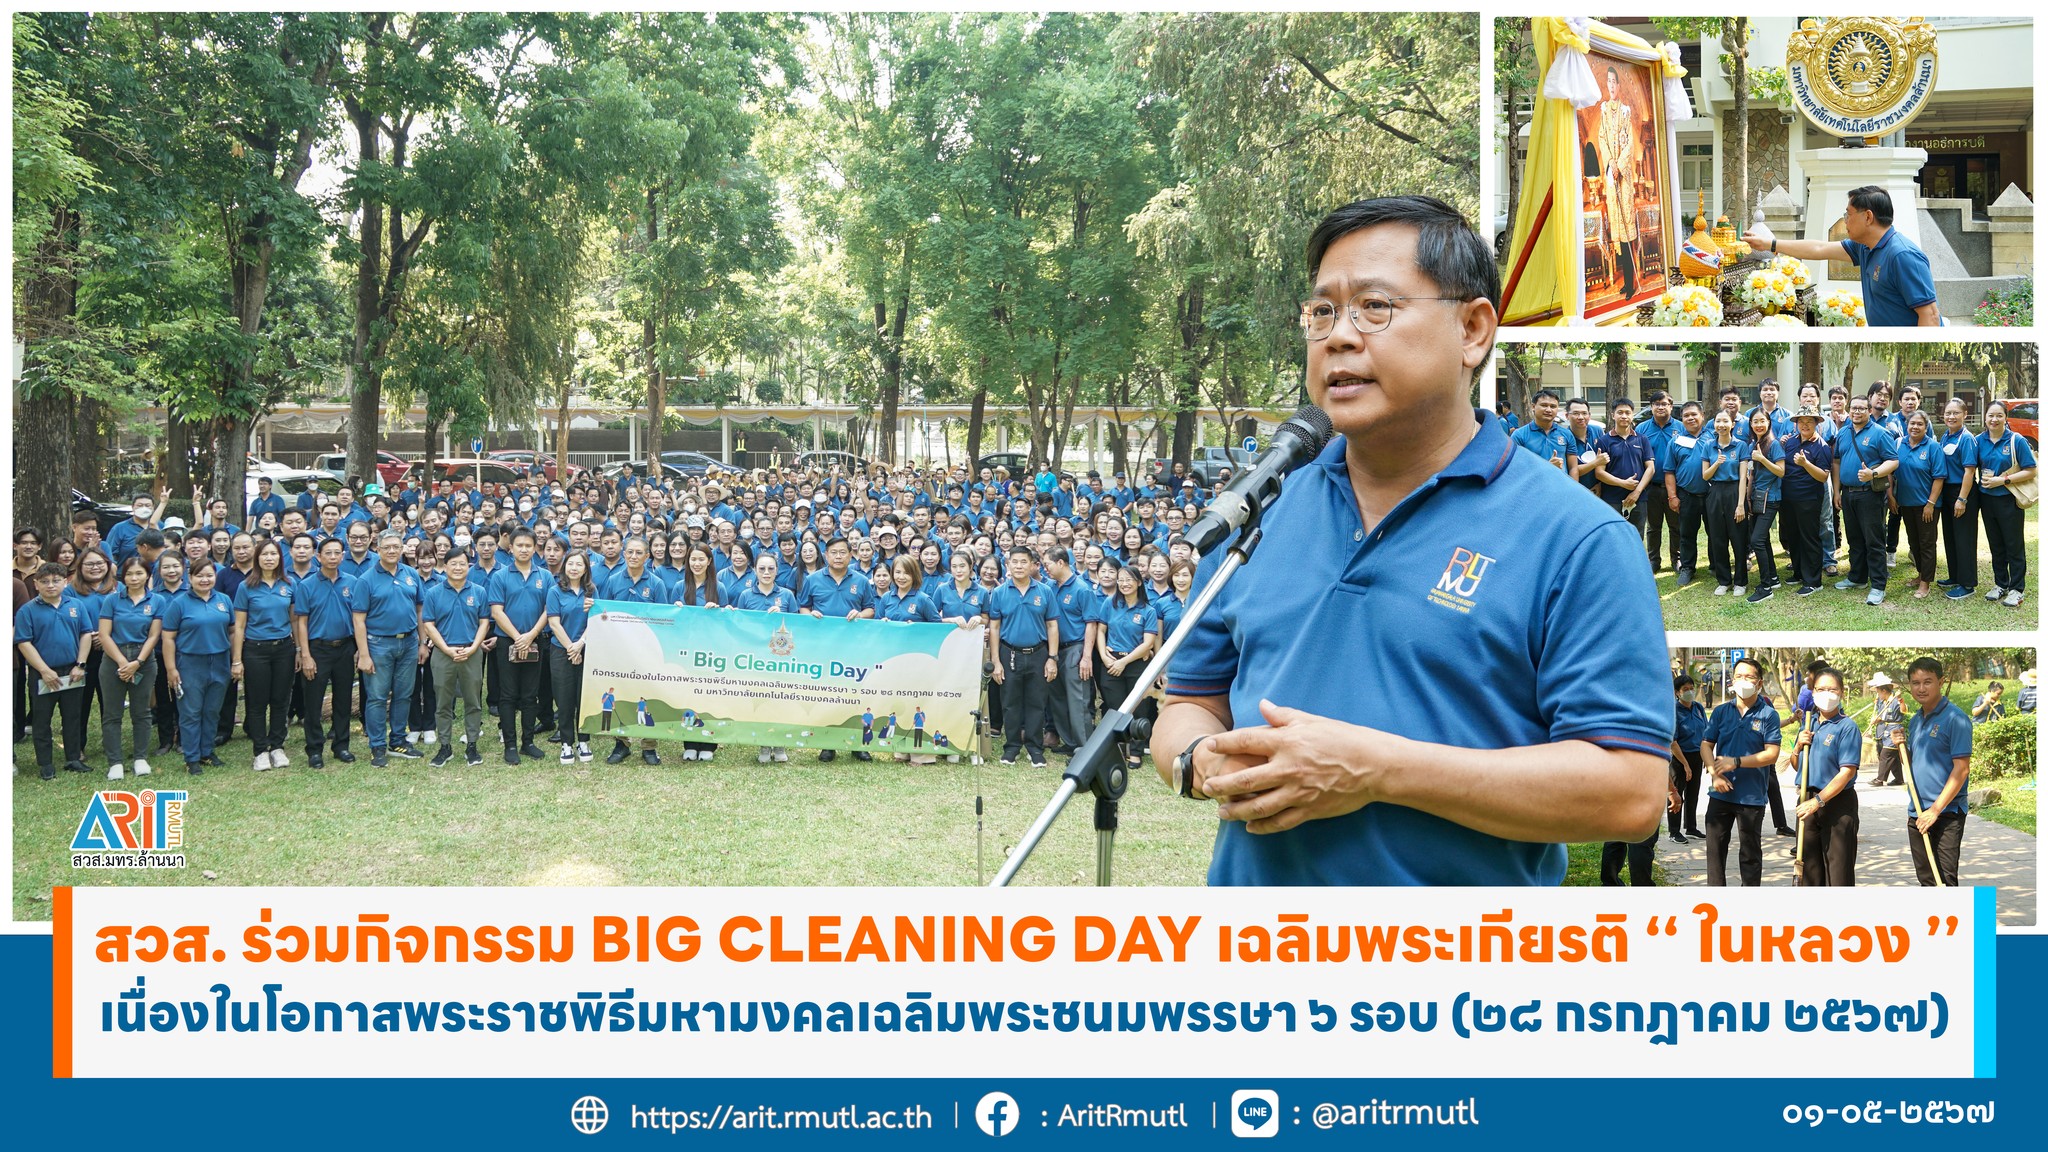 ร่วมกิจกรรม Big Cleaning Day เนื่องในโอกาสพระราชพิธีมหามงคลเฉลิมพระชนมพรรษา 6 รอบ 28 ก.ค. 2567